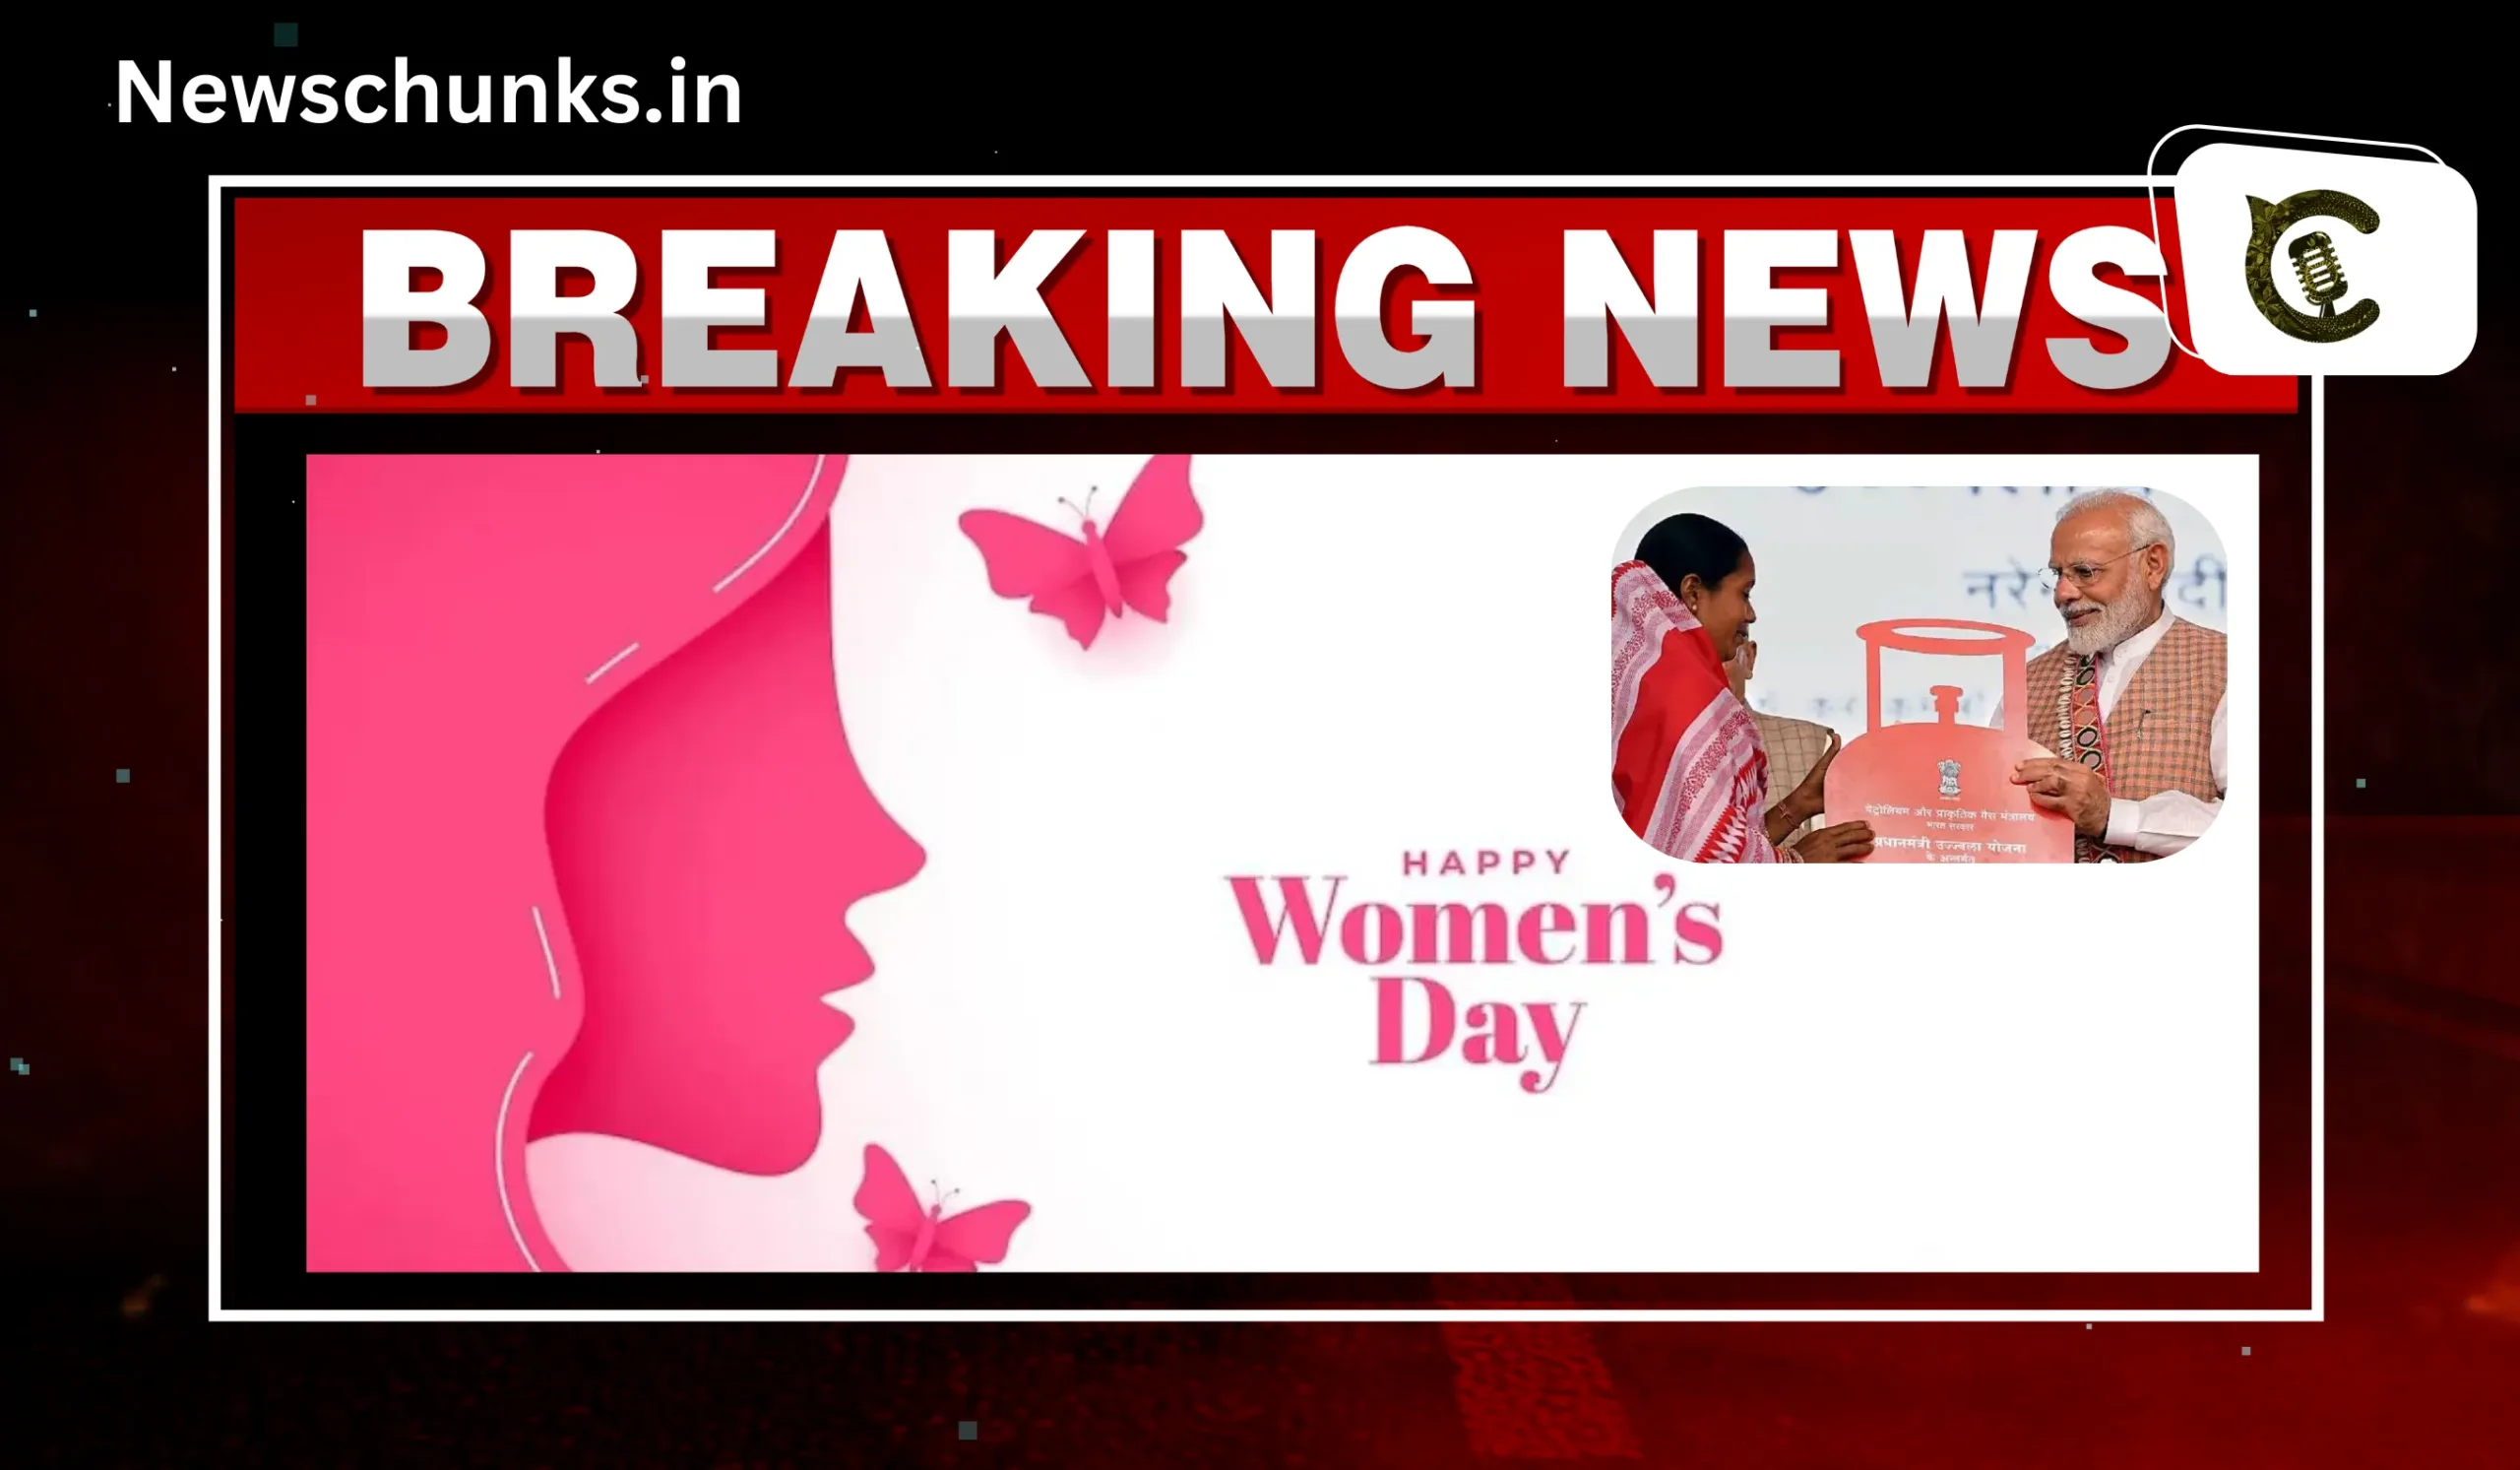 PM Modi gift to women on Women's Day: Women's Day पर पीएम मोदी का महिलाओं को गिफ्ट, सस्ते हुए एलपीजी सिलिंडर